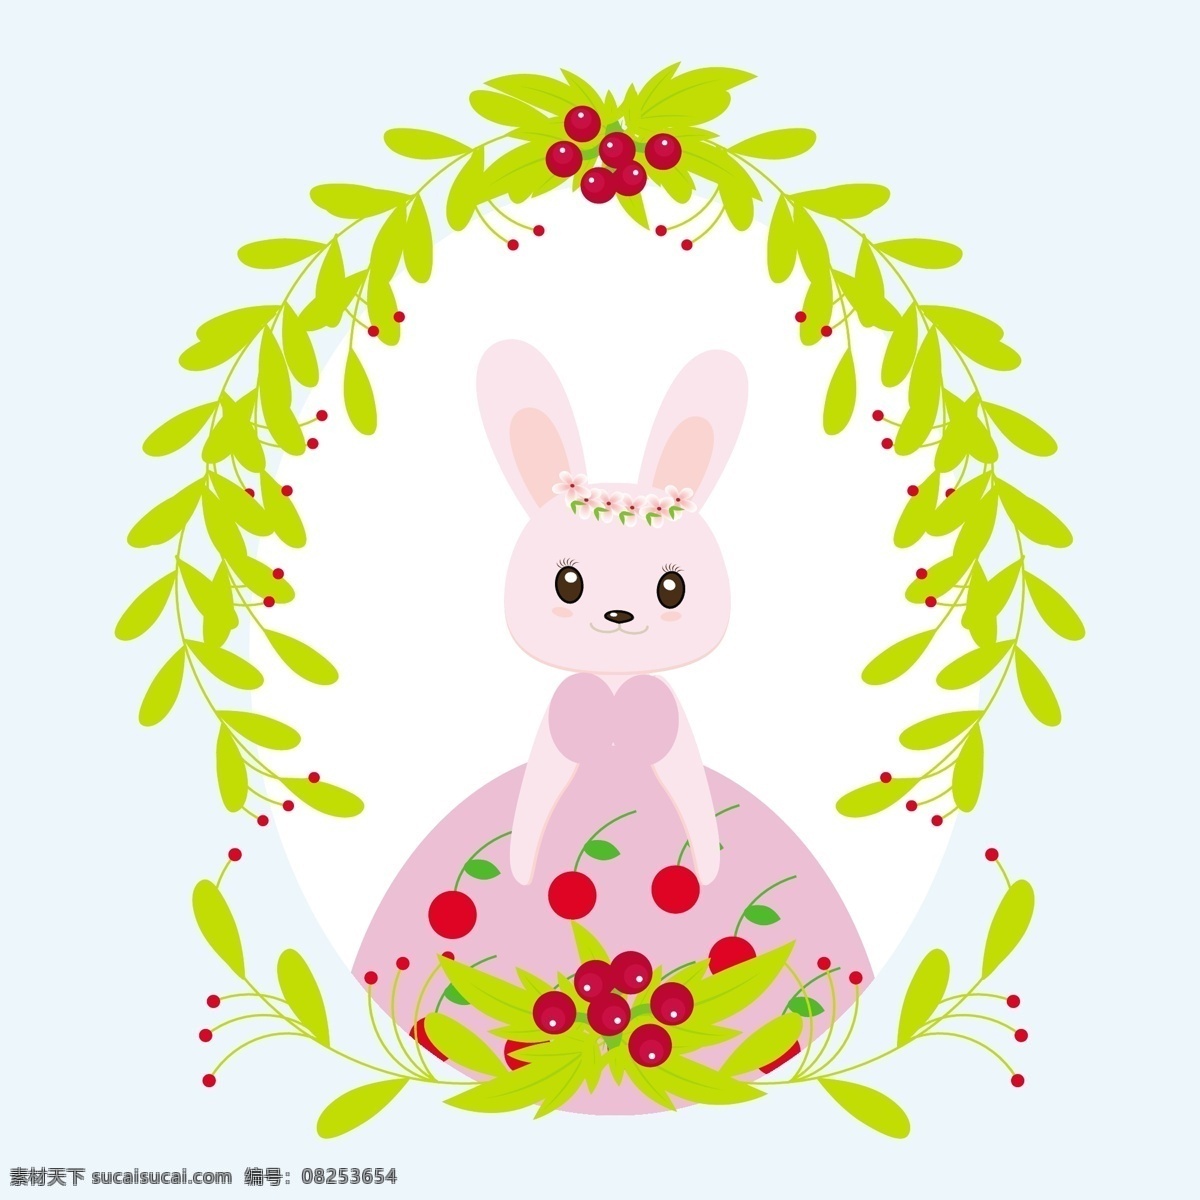 复活节 兔子 叶子 花边 背景 叶子花边 背景设计